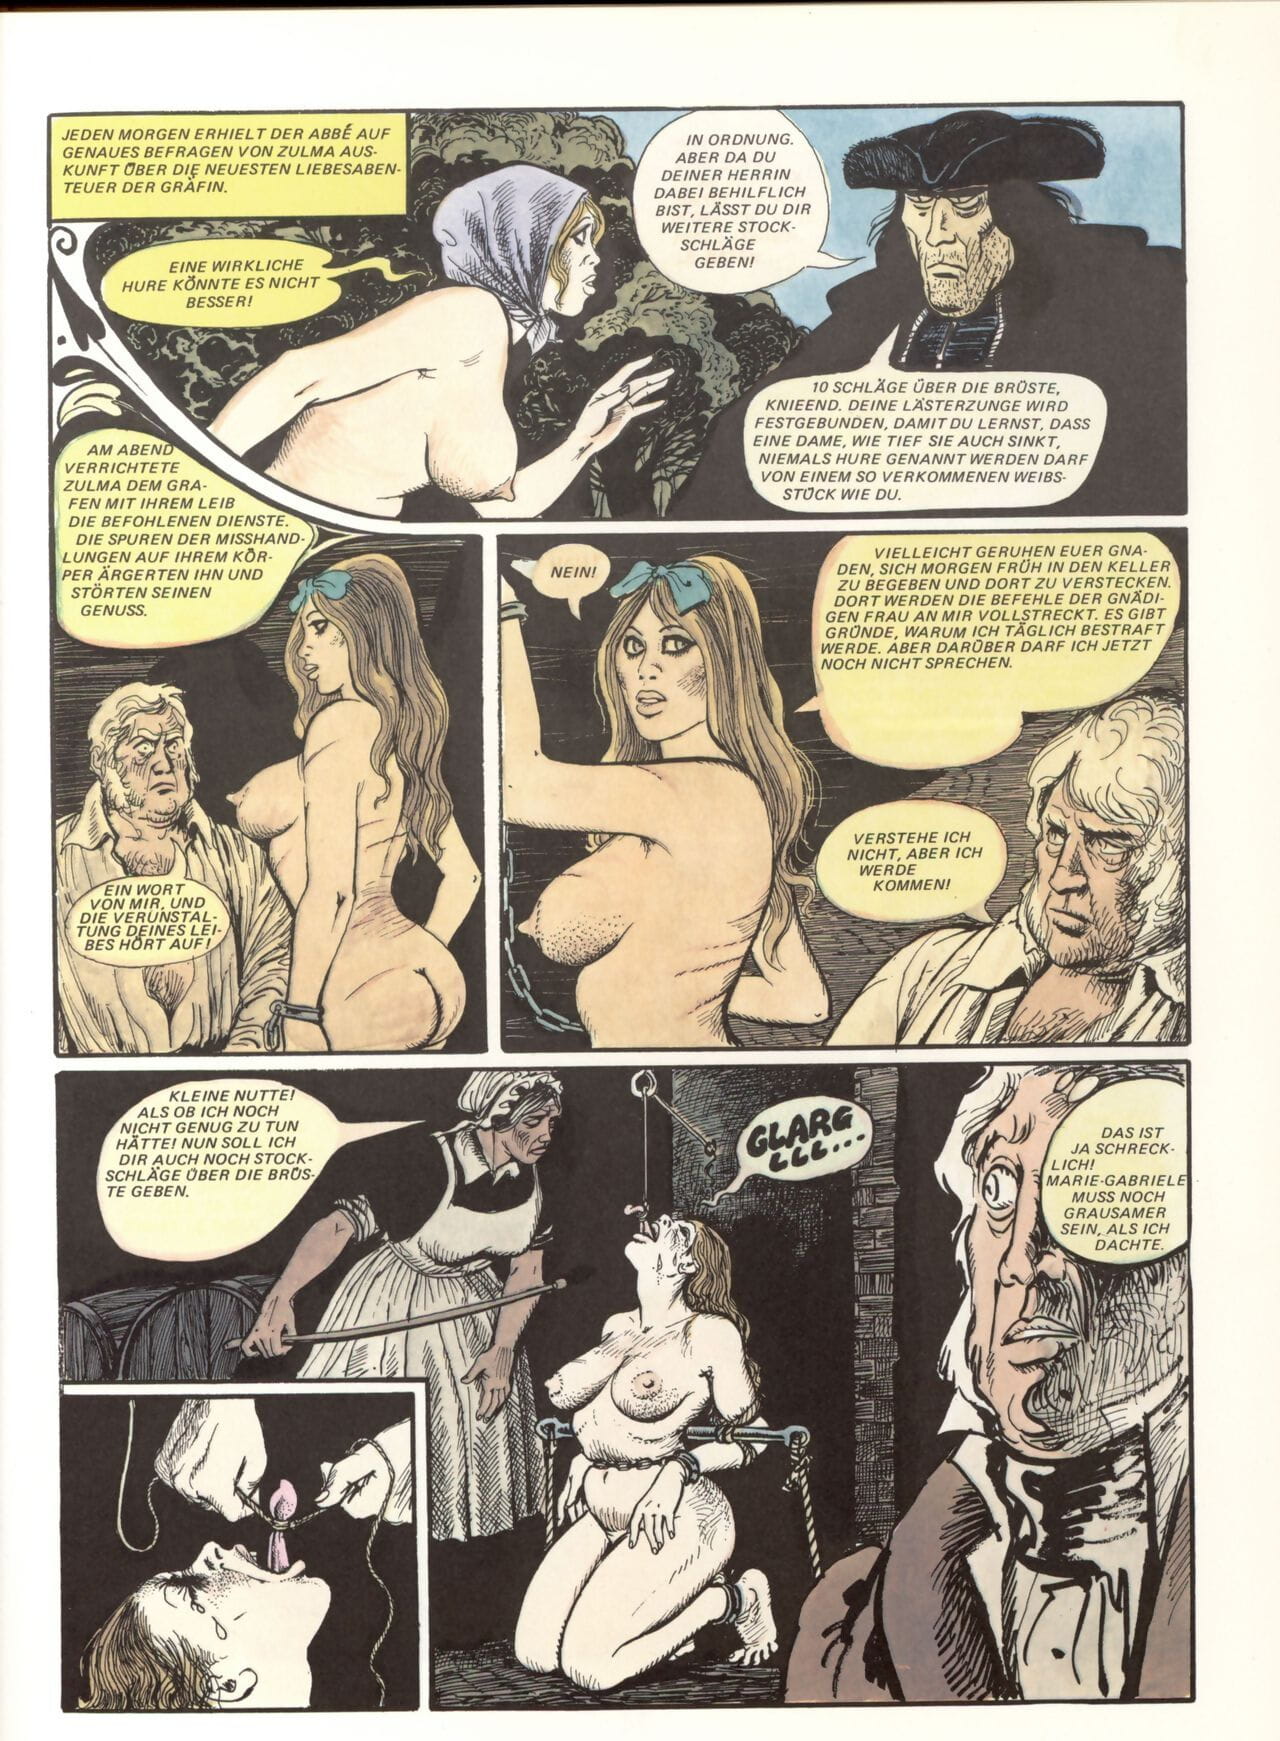 Marie Gabriel De St eutropa #02 page 1